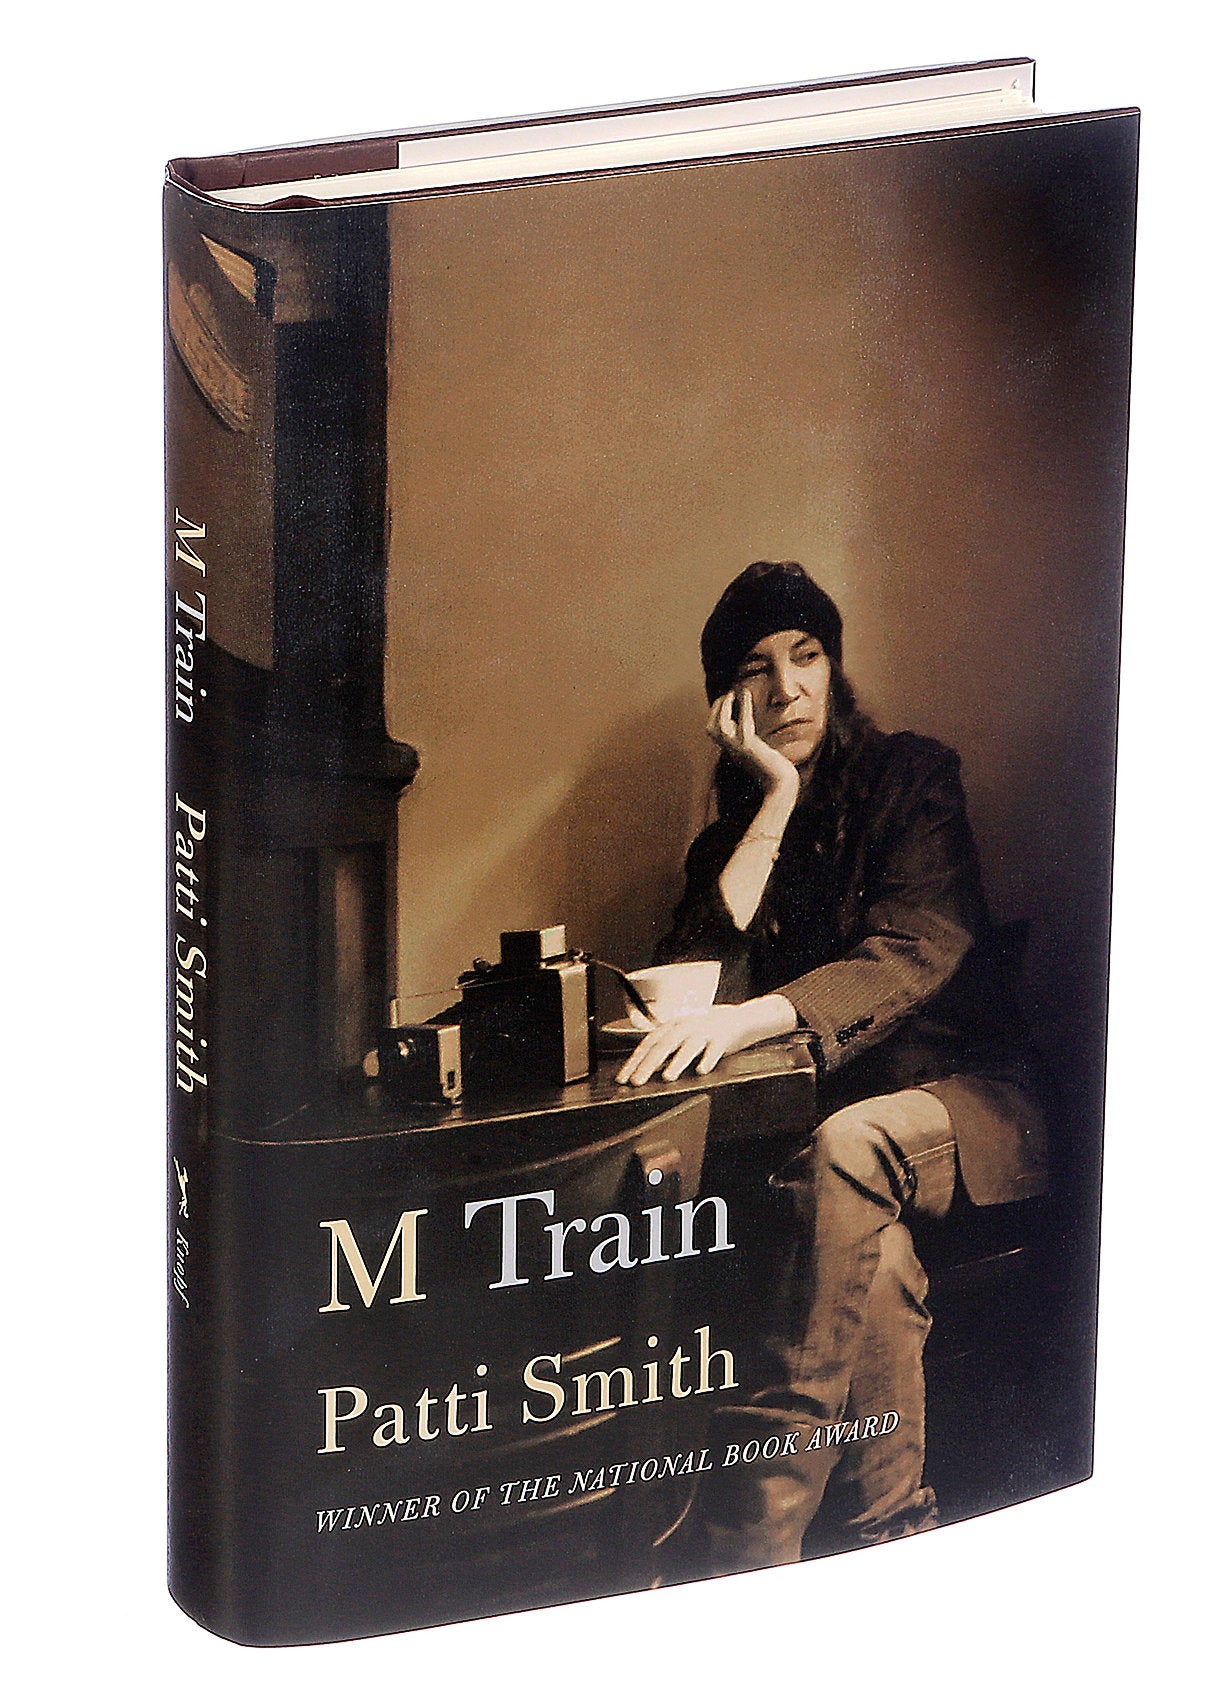 Patti Smith "M Train" Signed Book